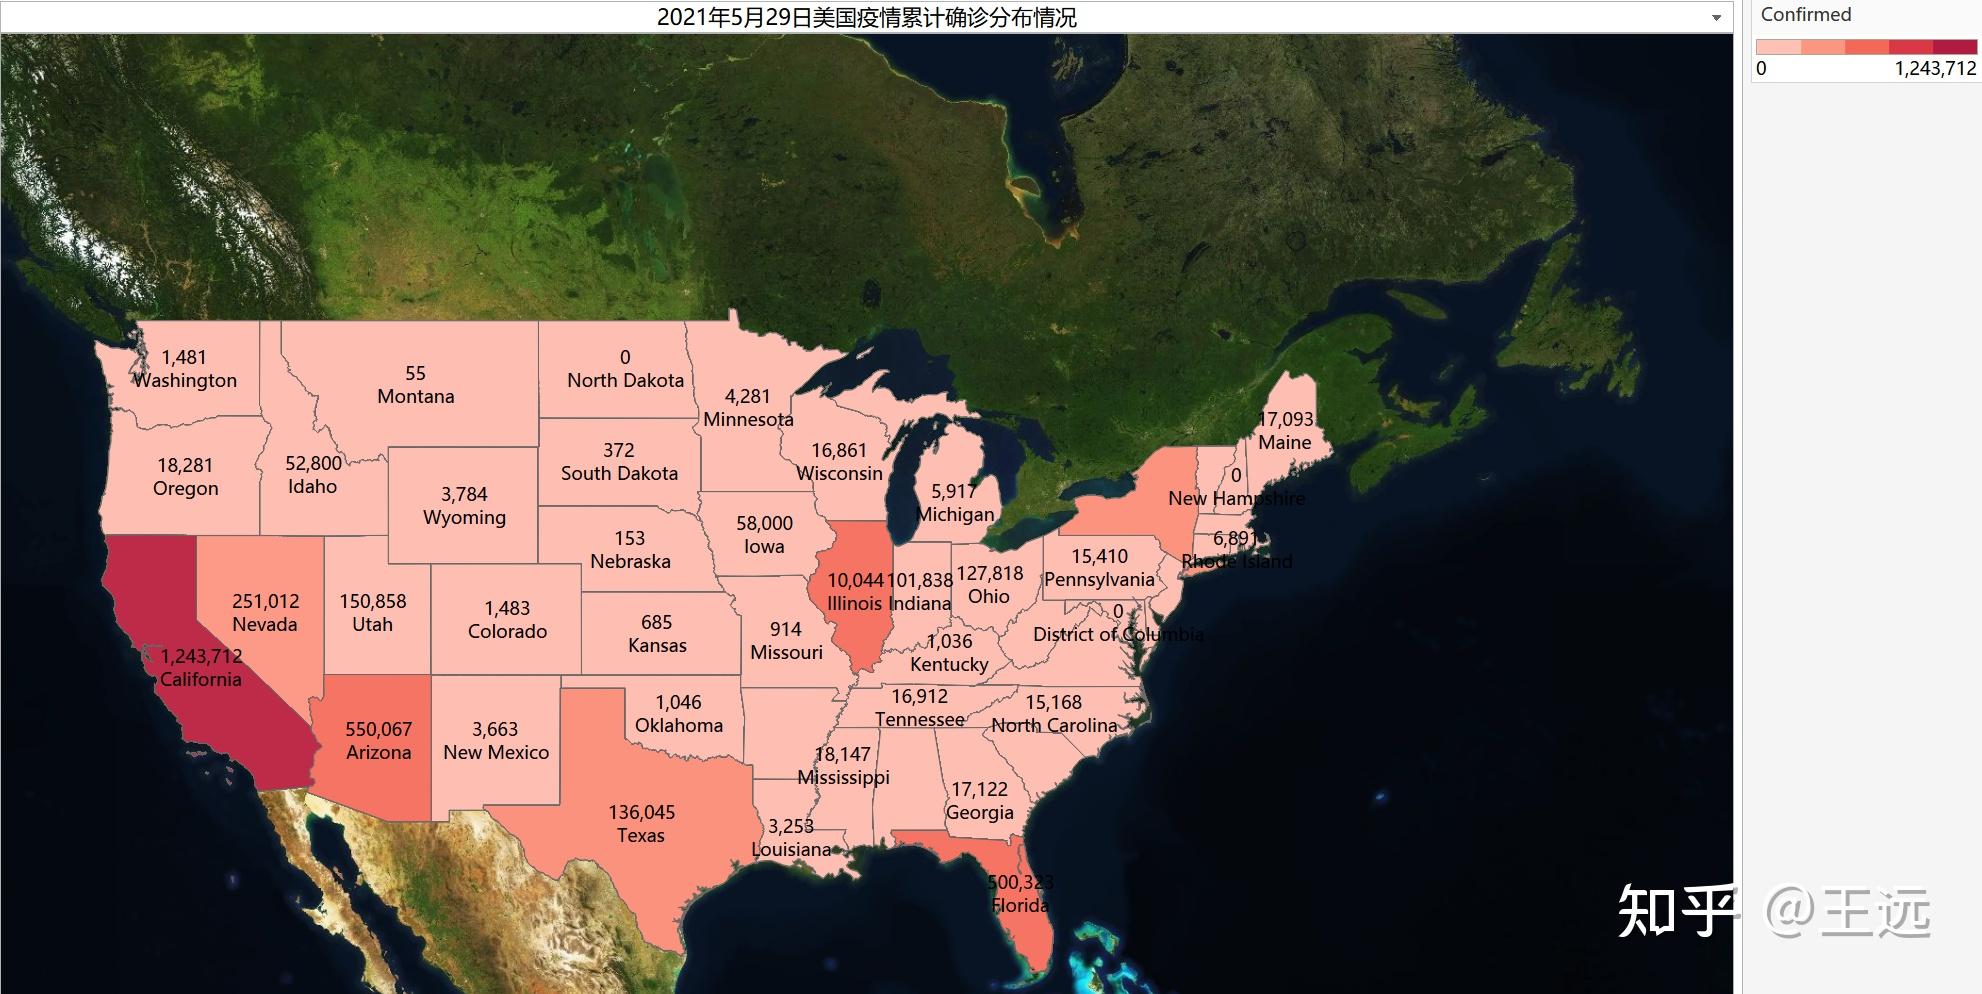 3美国疫情地图(截止到2021年5月29日)2